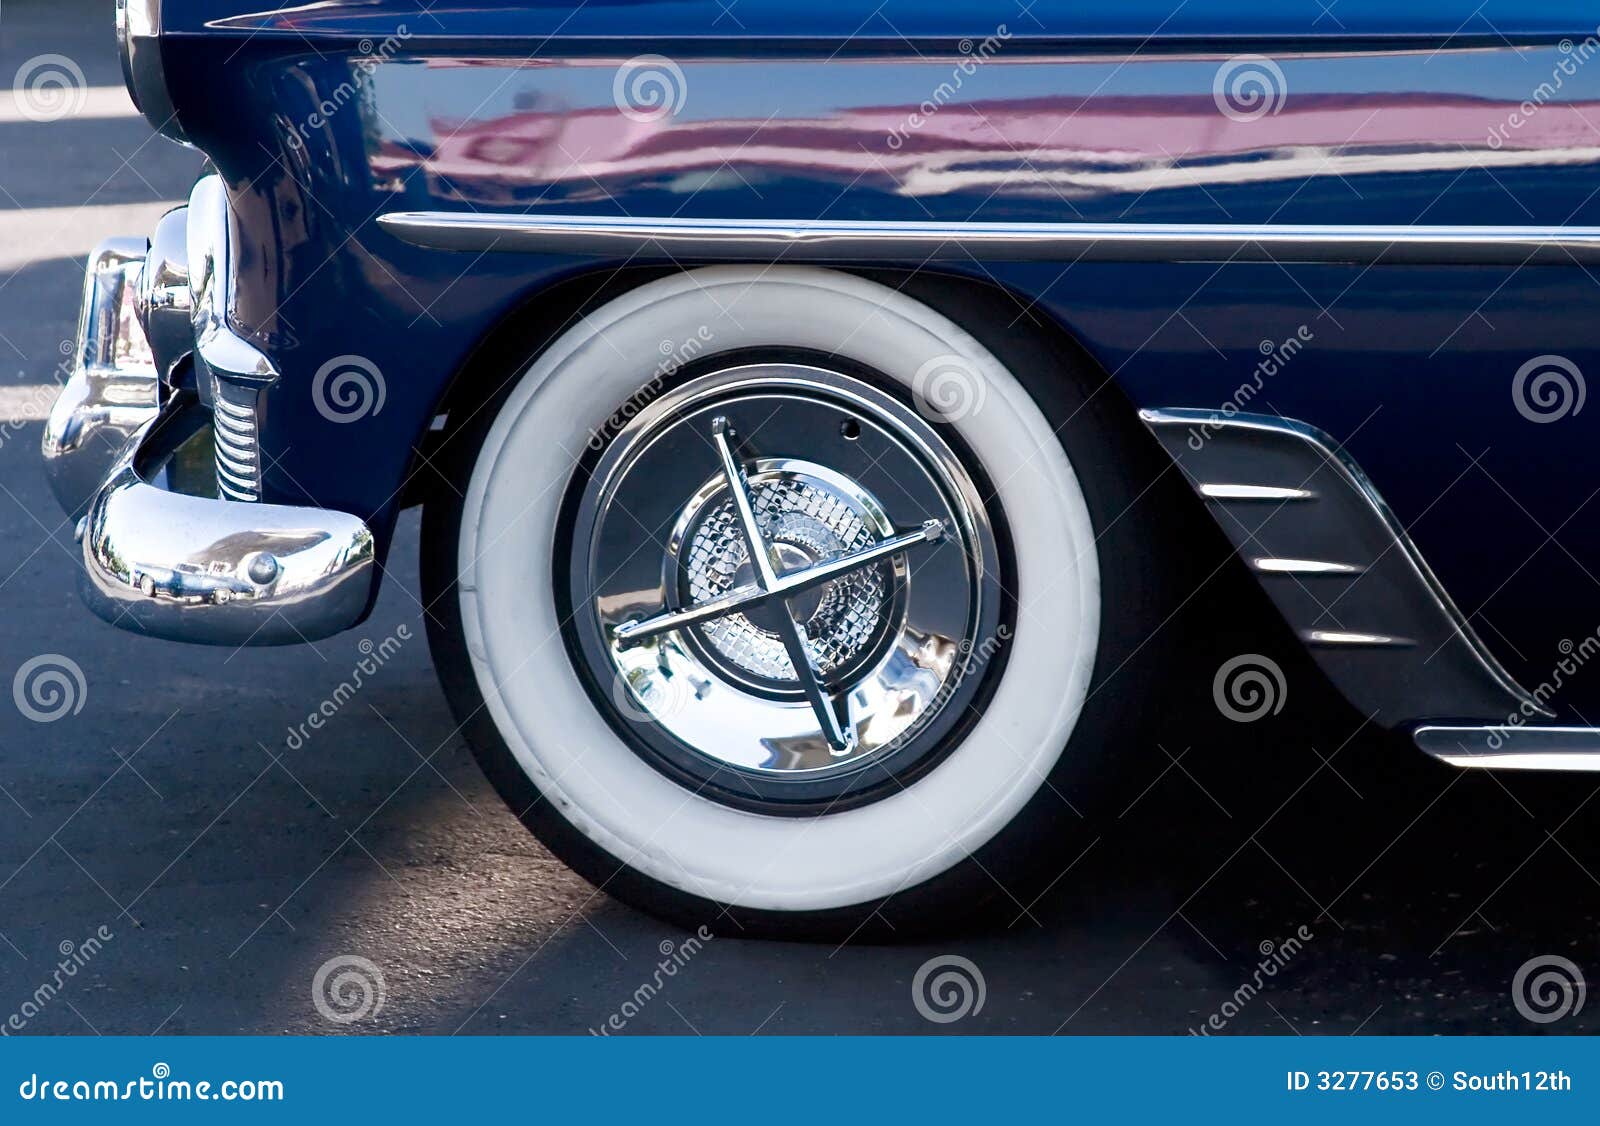 Vintage Car Tire 67